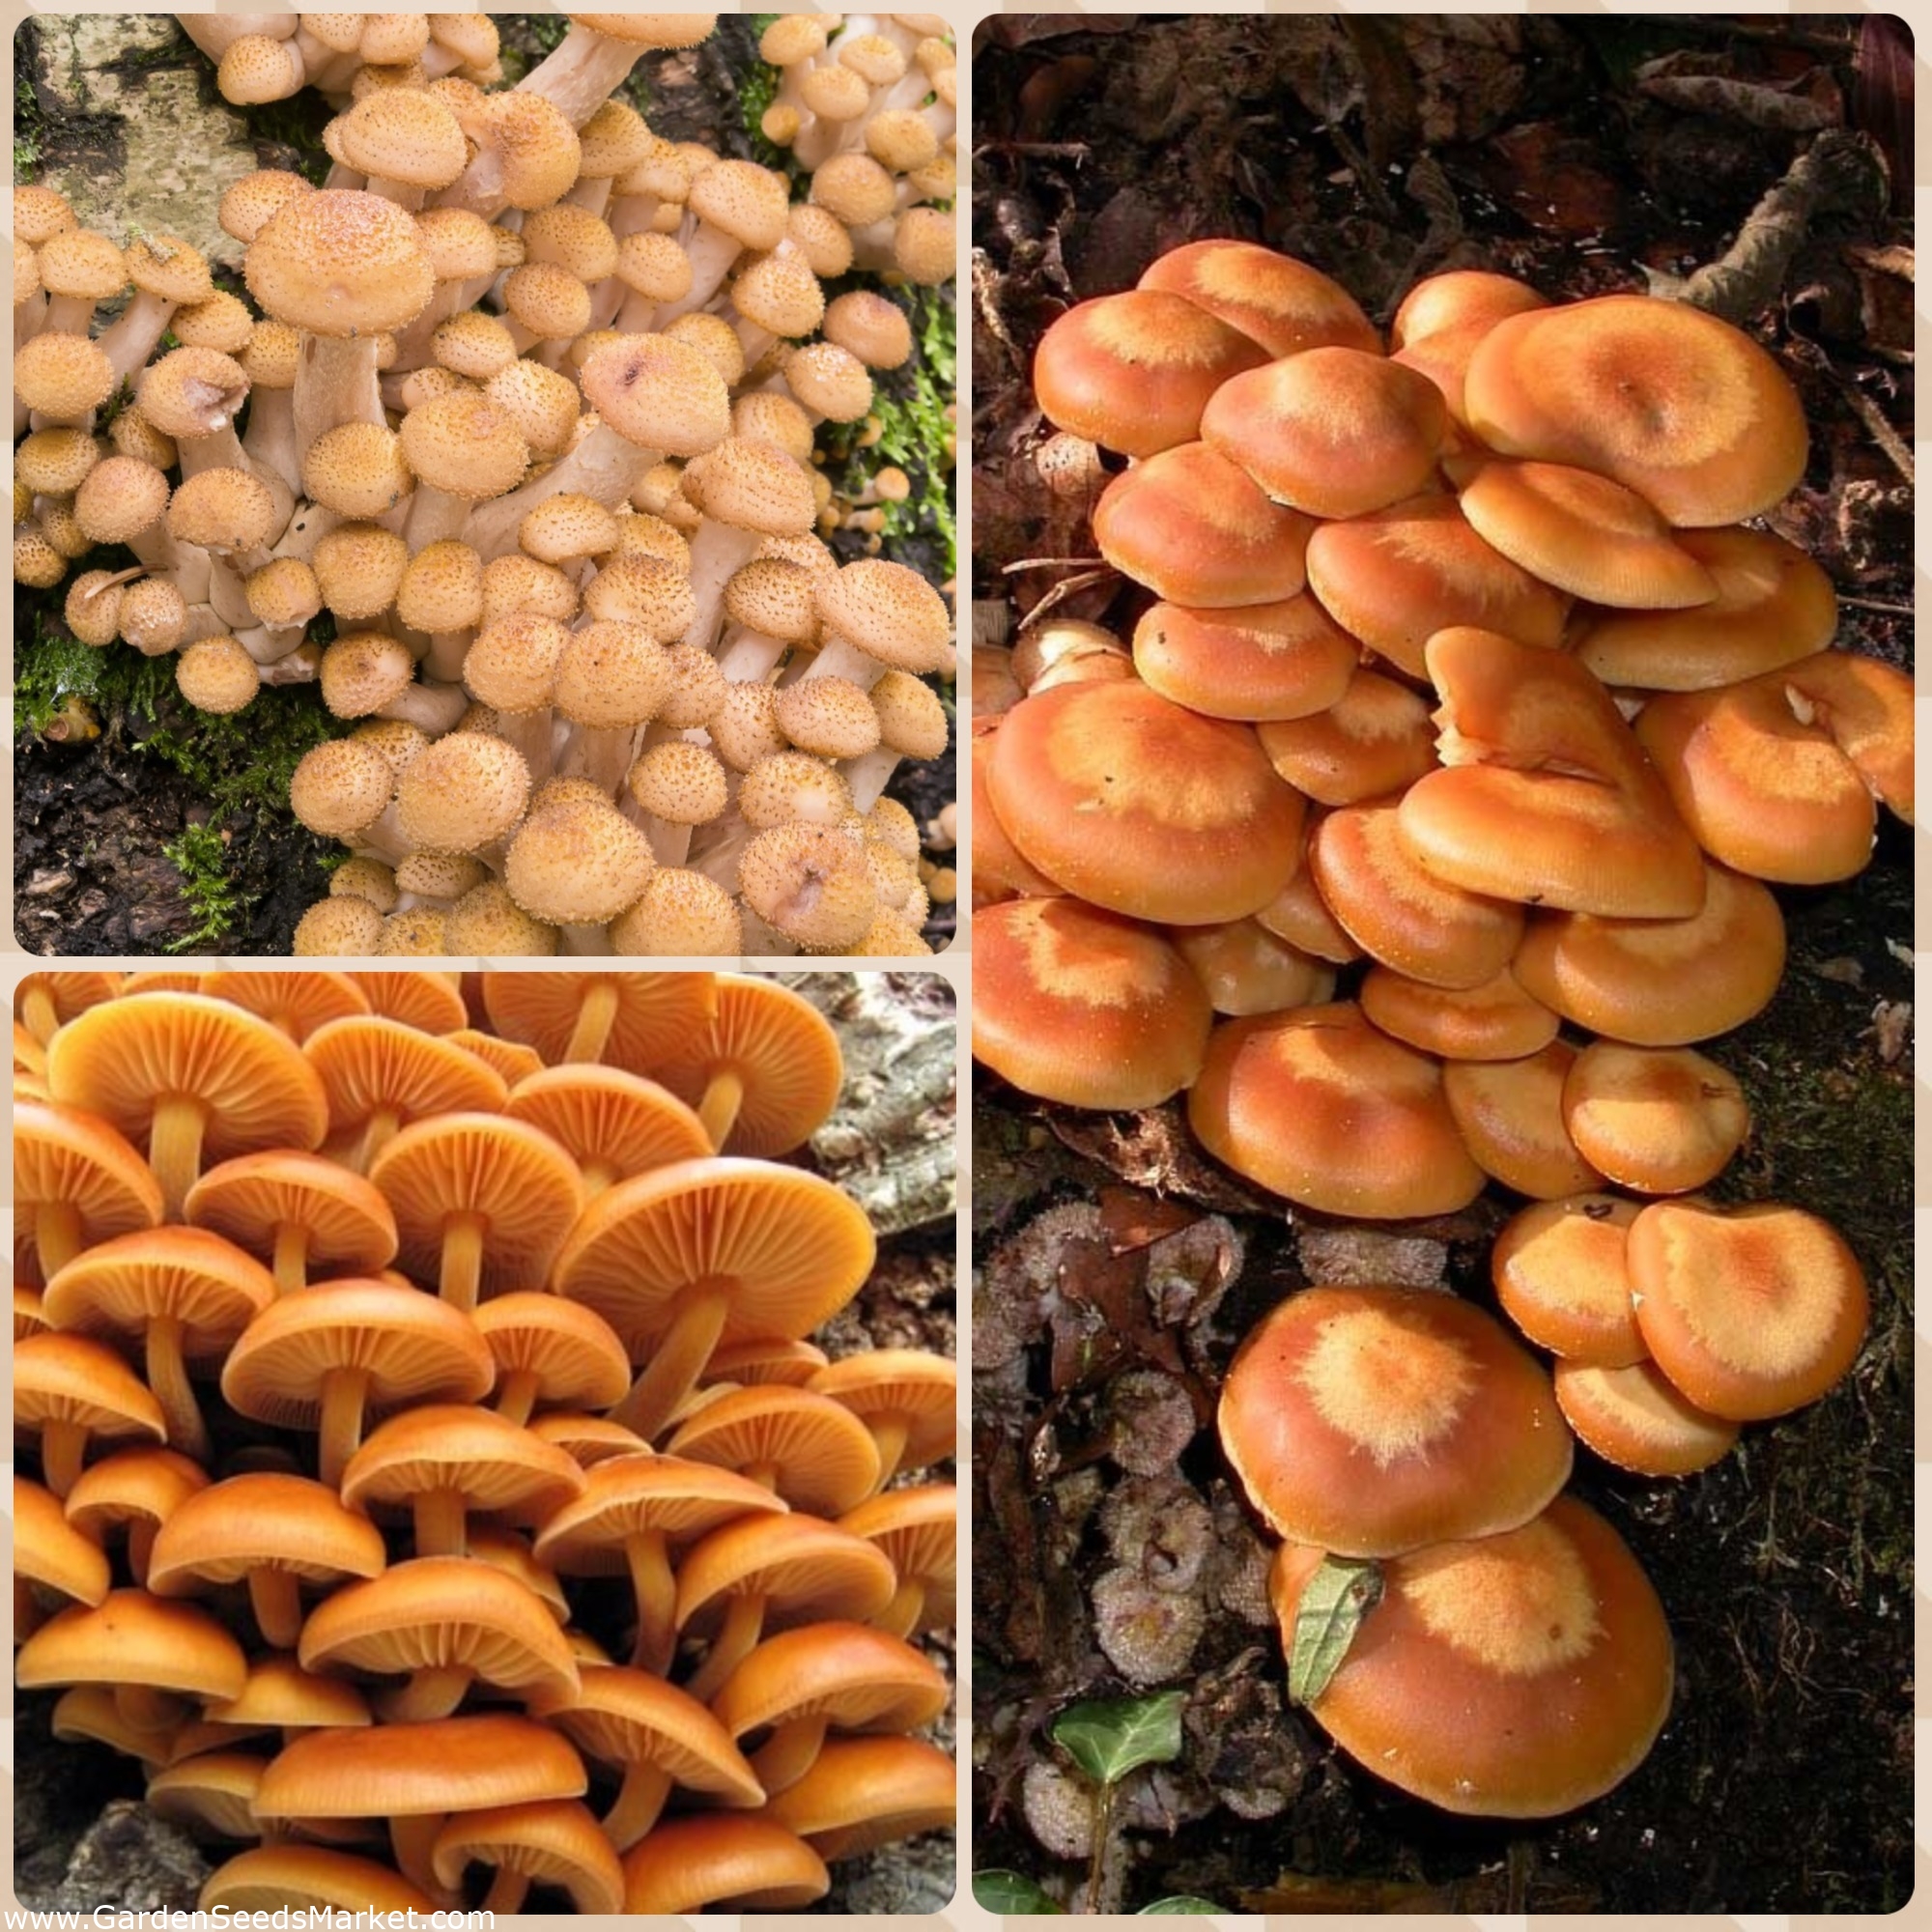 Funghi del miele e co - 3 specie di funghi: spine di spawn, spine di micelio  - – Garden Seeds Market | Spedizione gratuita